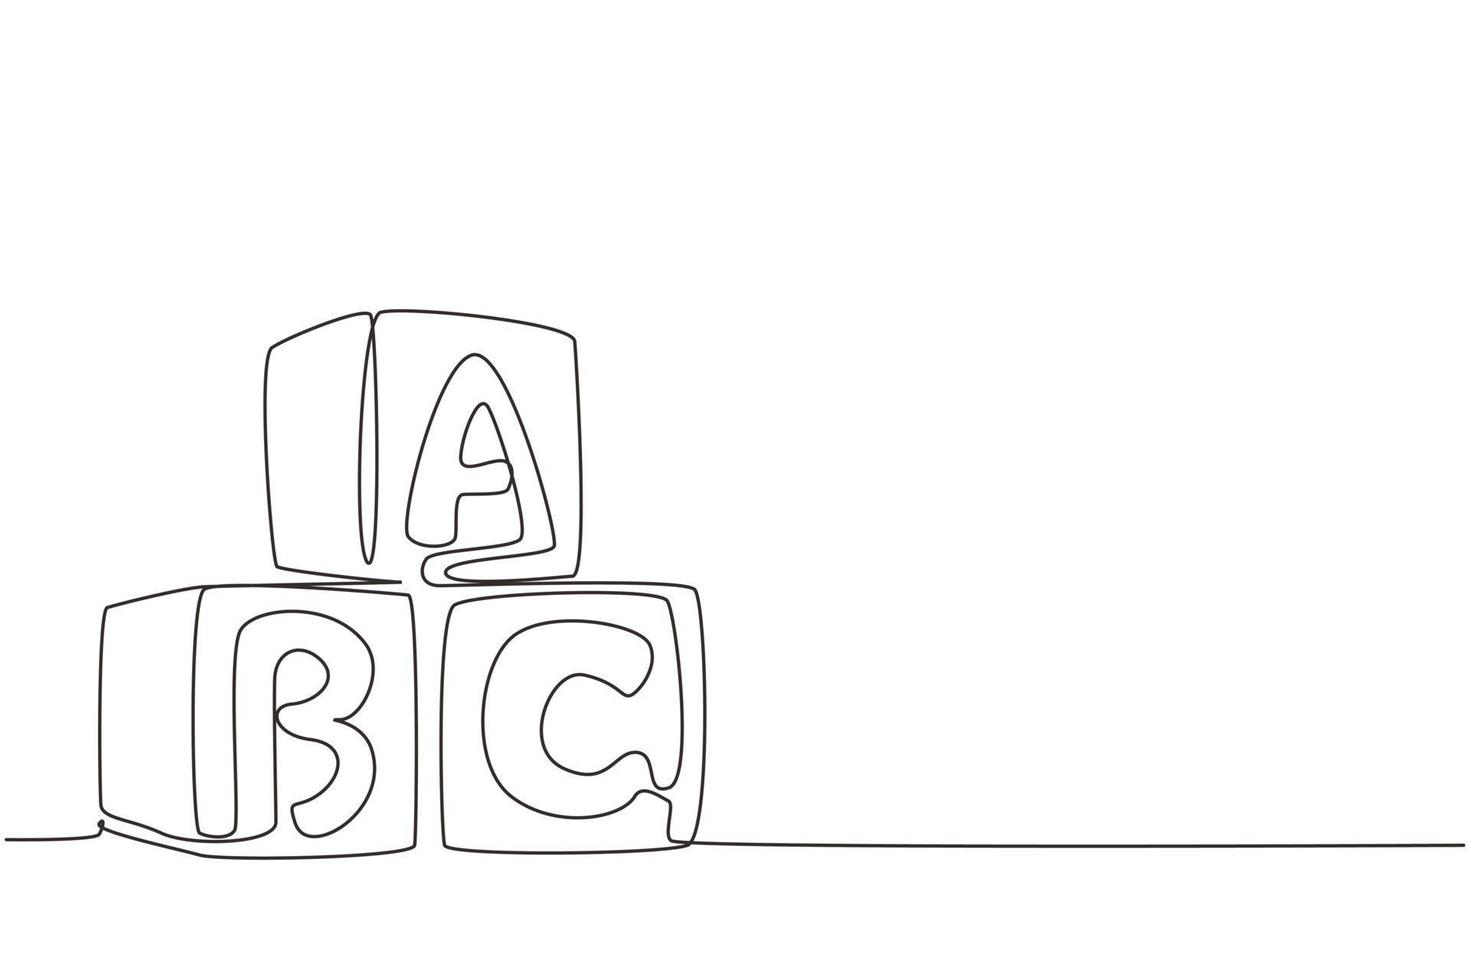 cubi di alfabeto di disegno a linea singola con lettere abc. torre dell'edificio a blocchi. blocchi di costruzione di lettere abc. cubi di alfabeto con lettere. illustrazione vettoriale grafica moderna con disegno a linea continua